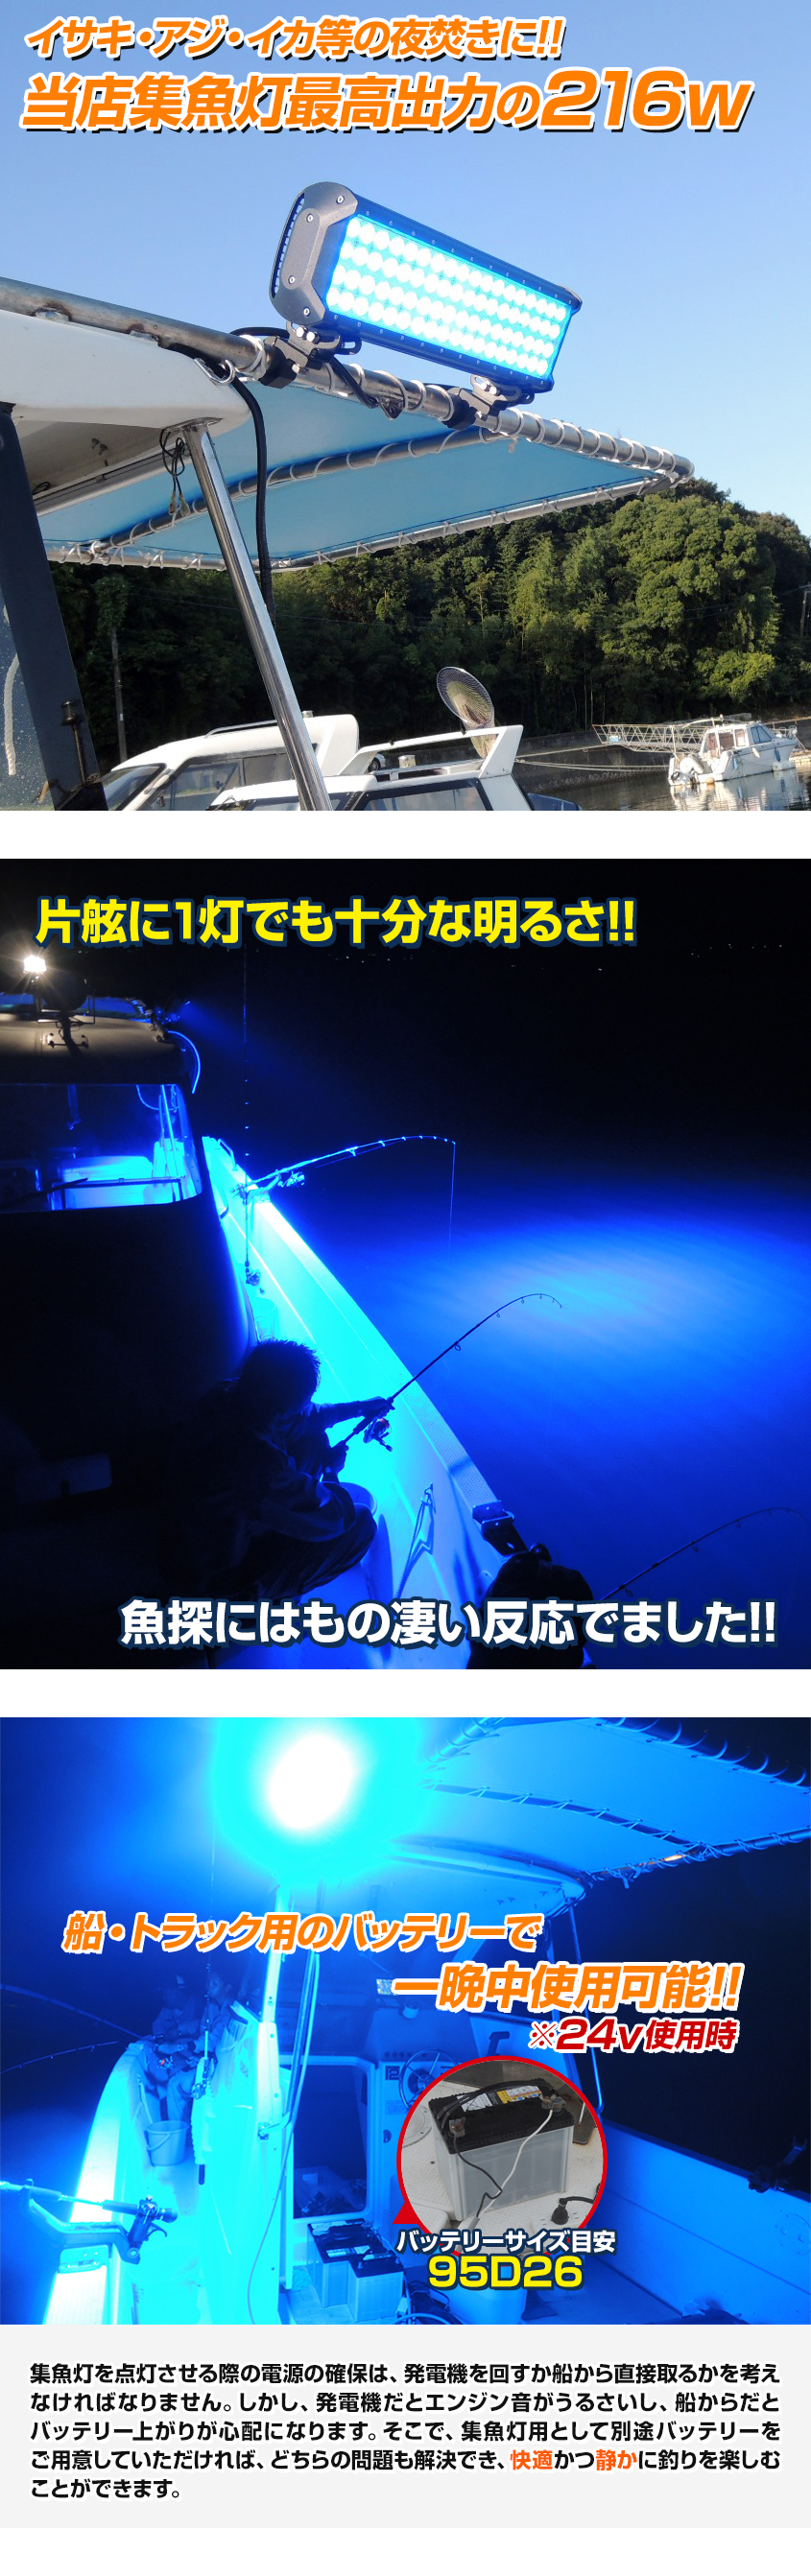 作業灯 LED作業灯 led LED集魚灯 12v 24v 拡散 広角 45w 青色 ブルーライト LED 投光器 イカ アジ タチウオ 夜 - 2